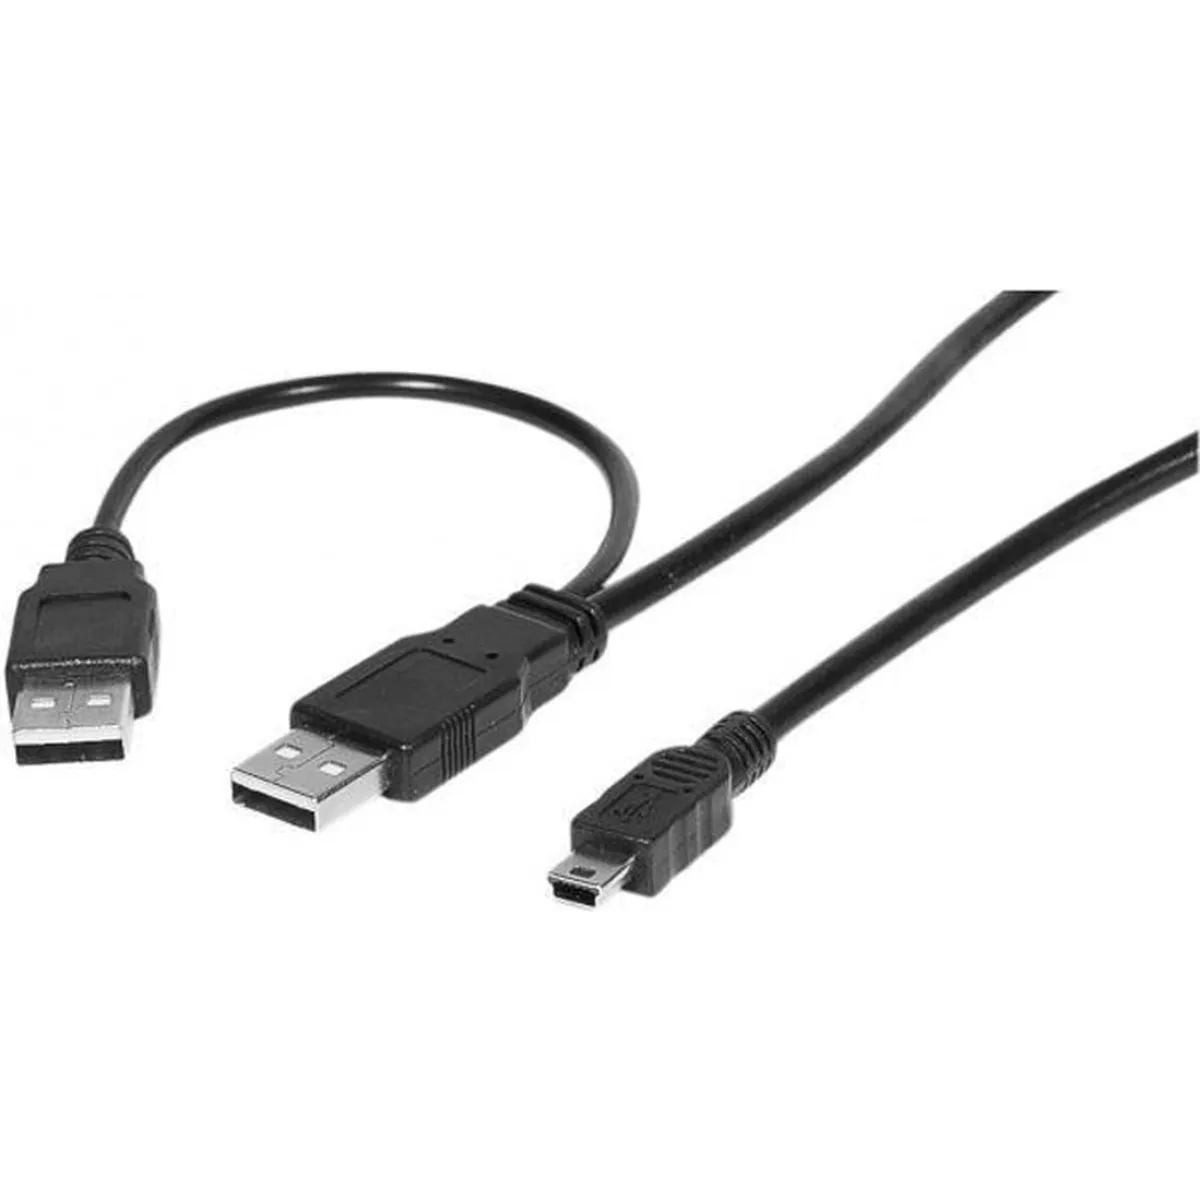 כבל Mini USB2.0 ל-USB A כפול לצורב / כונן חיצוני